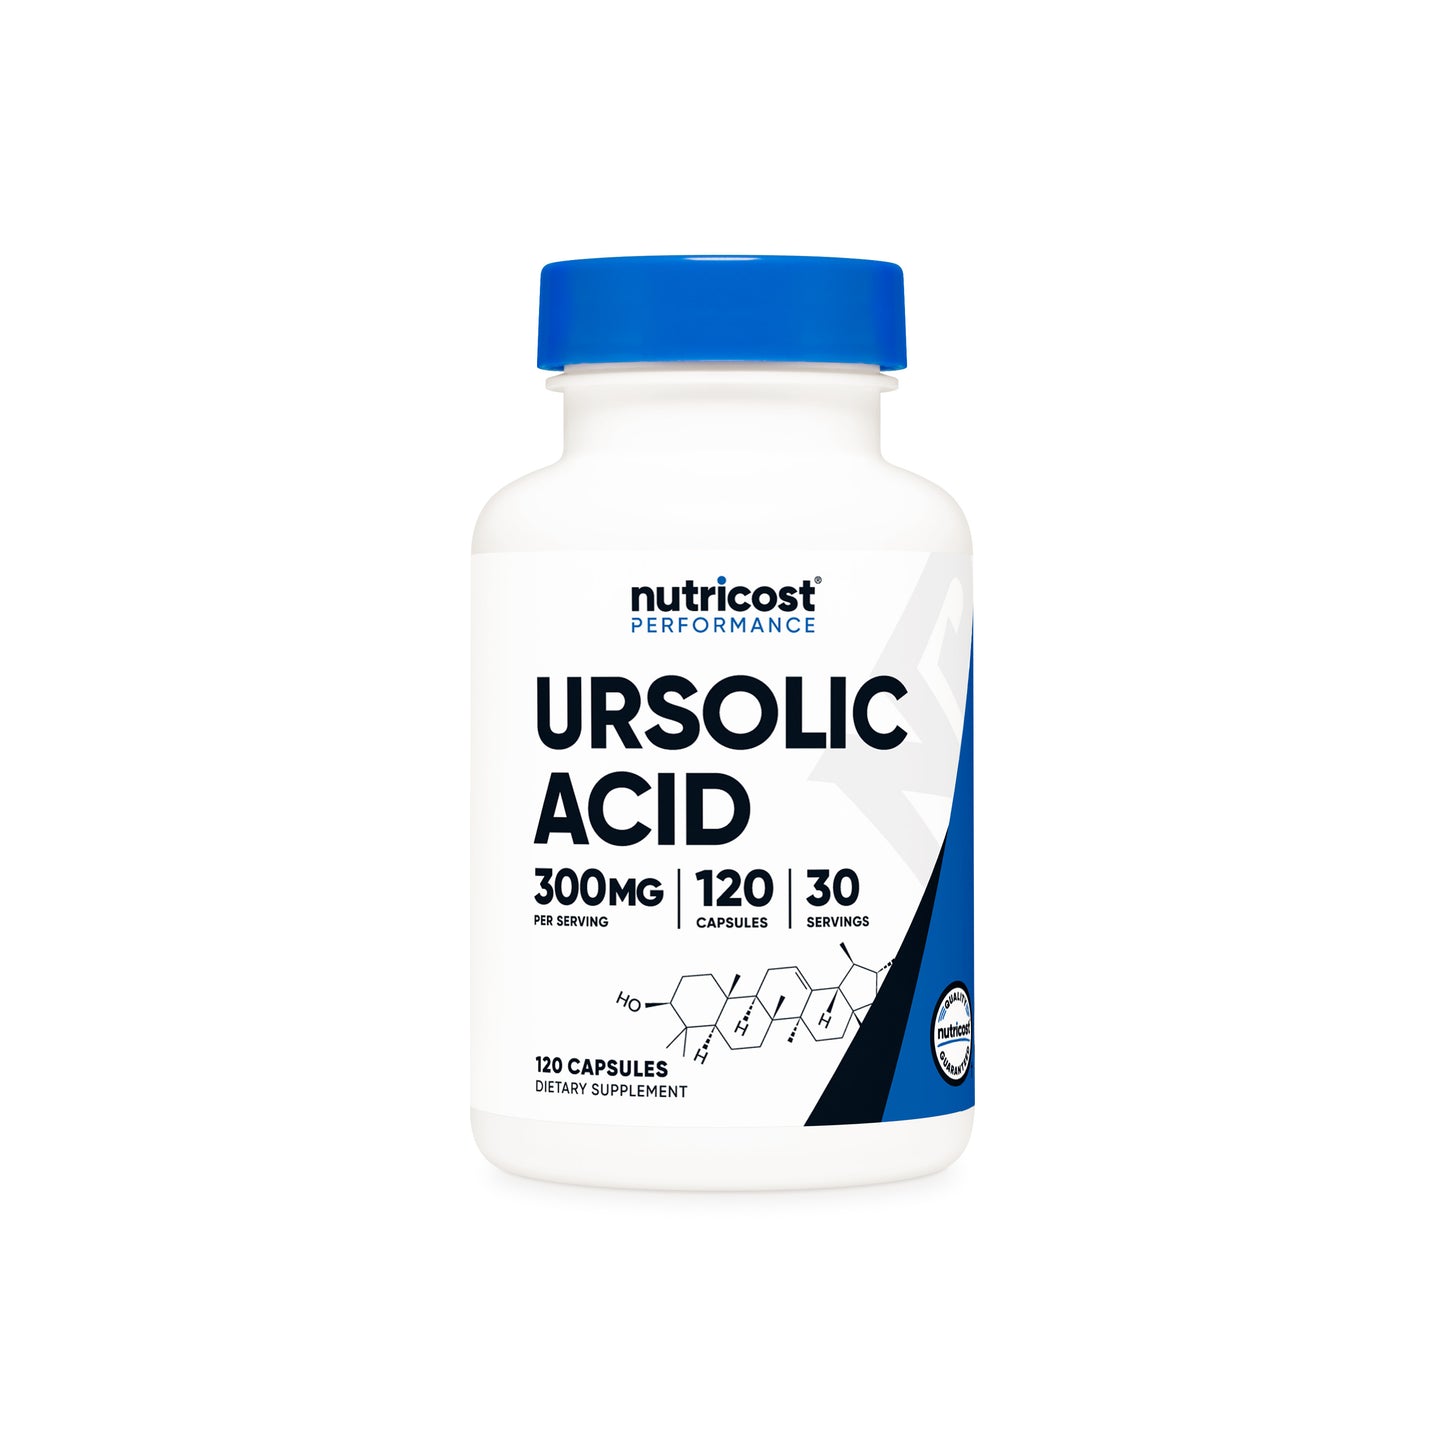 Nutricost Ursolic Acid Capsules